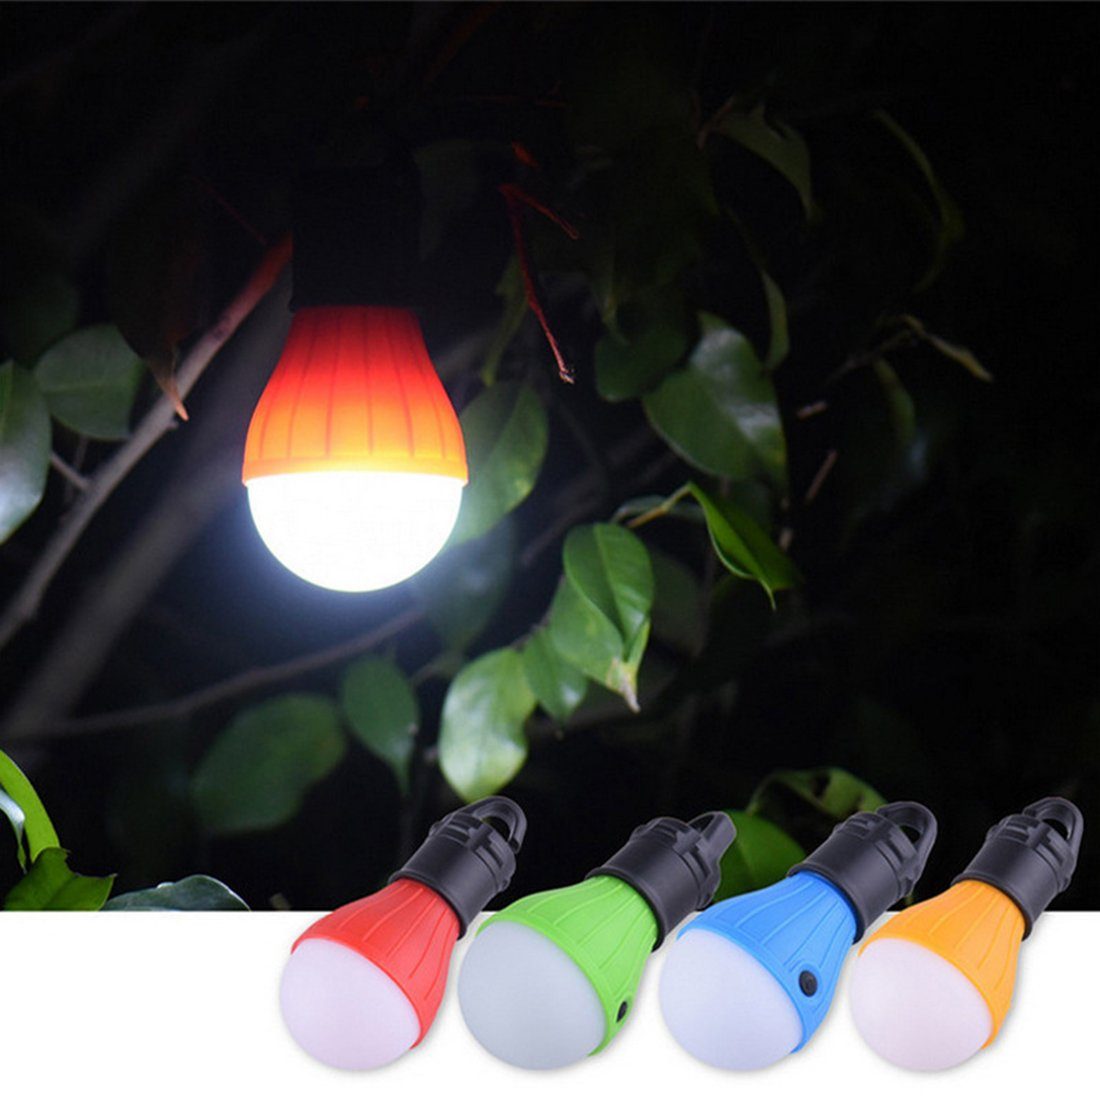 Haiaveng LED Außen-Tischleuchte Wasserdicht Camping LED Campinglampe, Zeltlampe Stücke Glühbirne, 4 Abenteuer,Angeln,Stromausfall Notlicht,Camping Lampen Laterne für